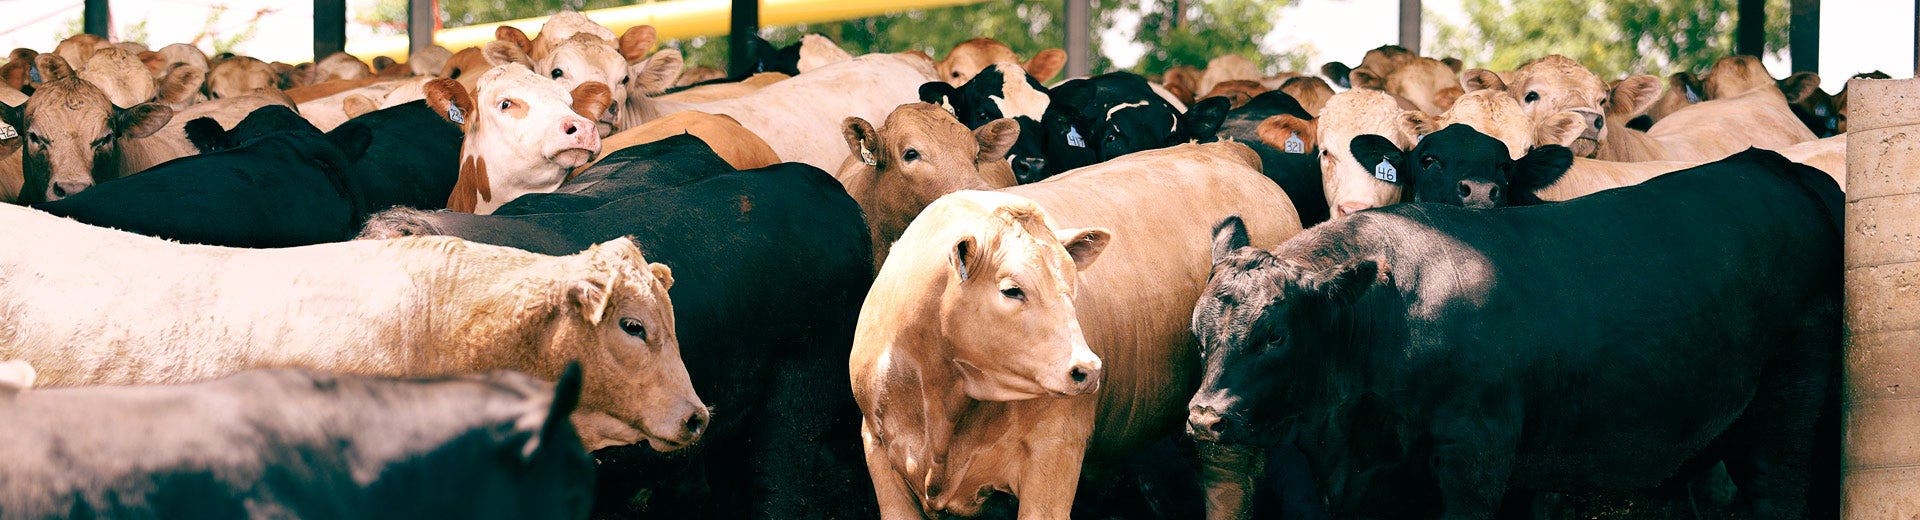 Herd of beef cattle congregate in a feedyard.